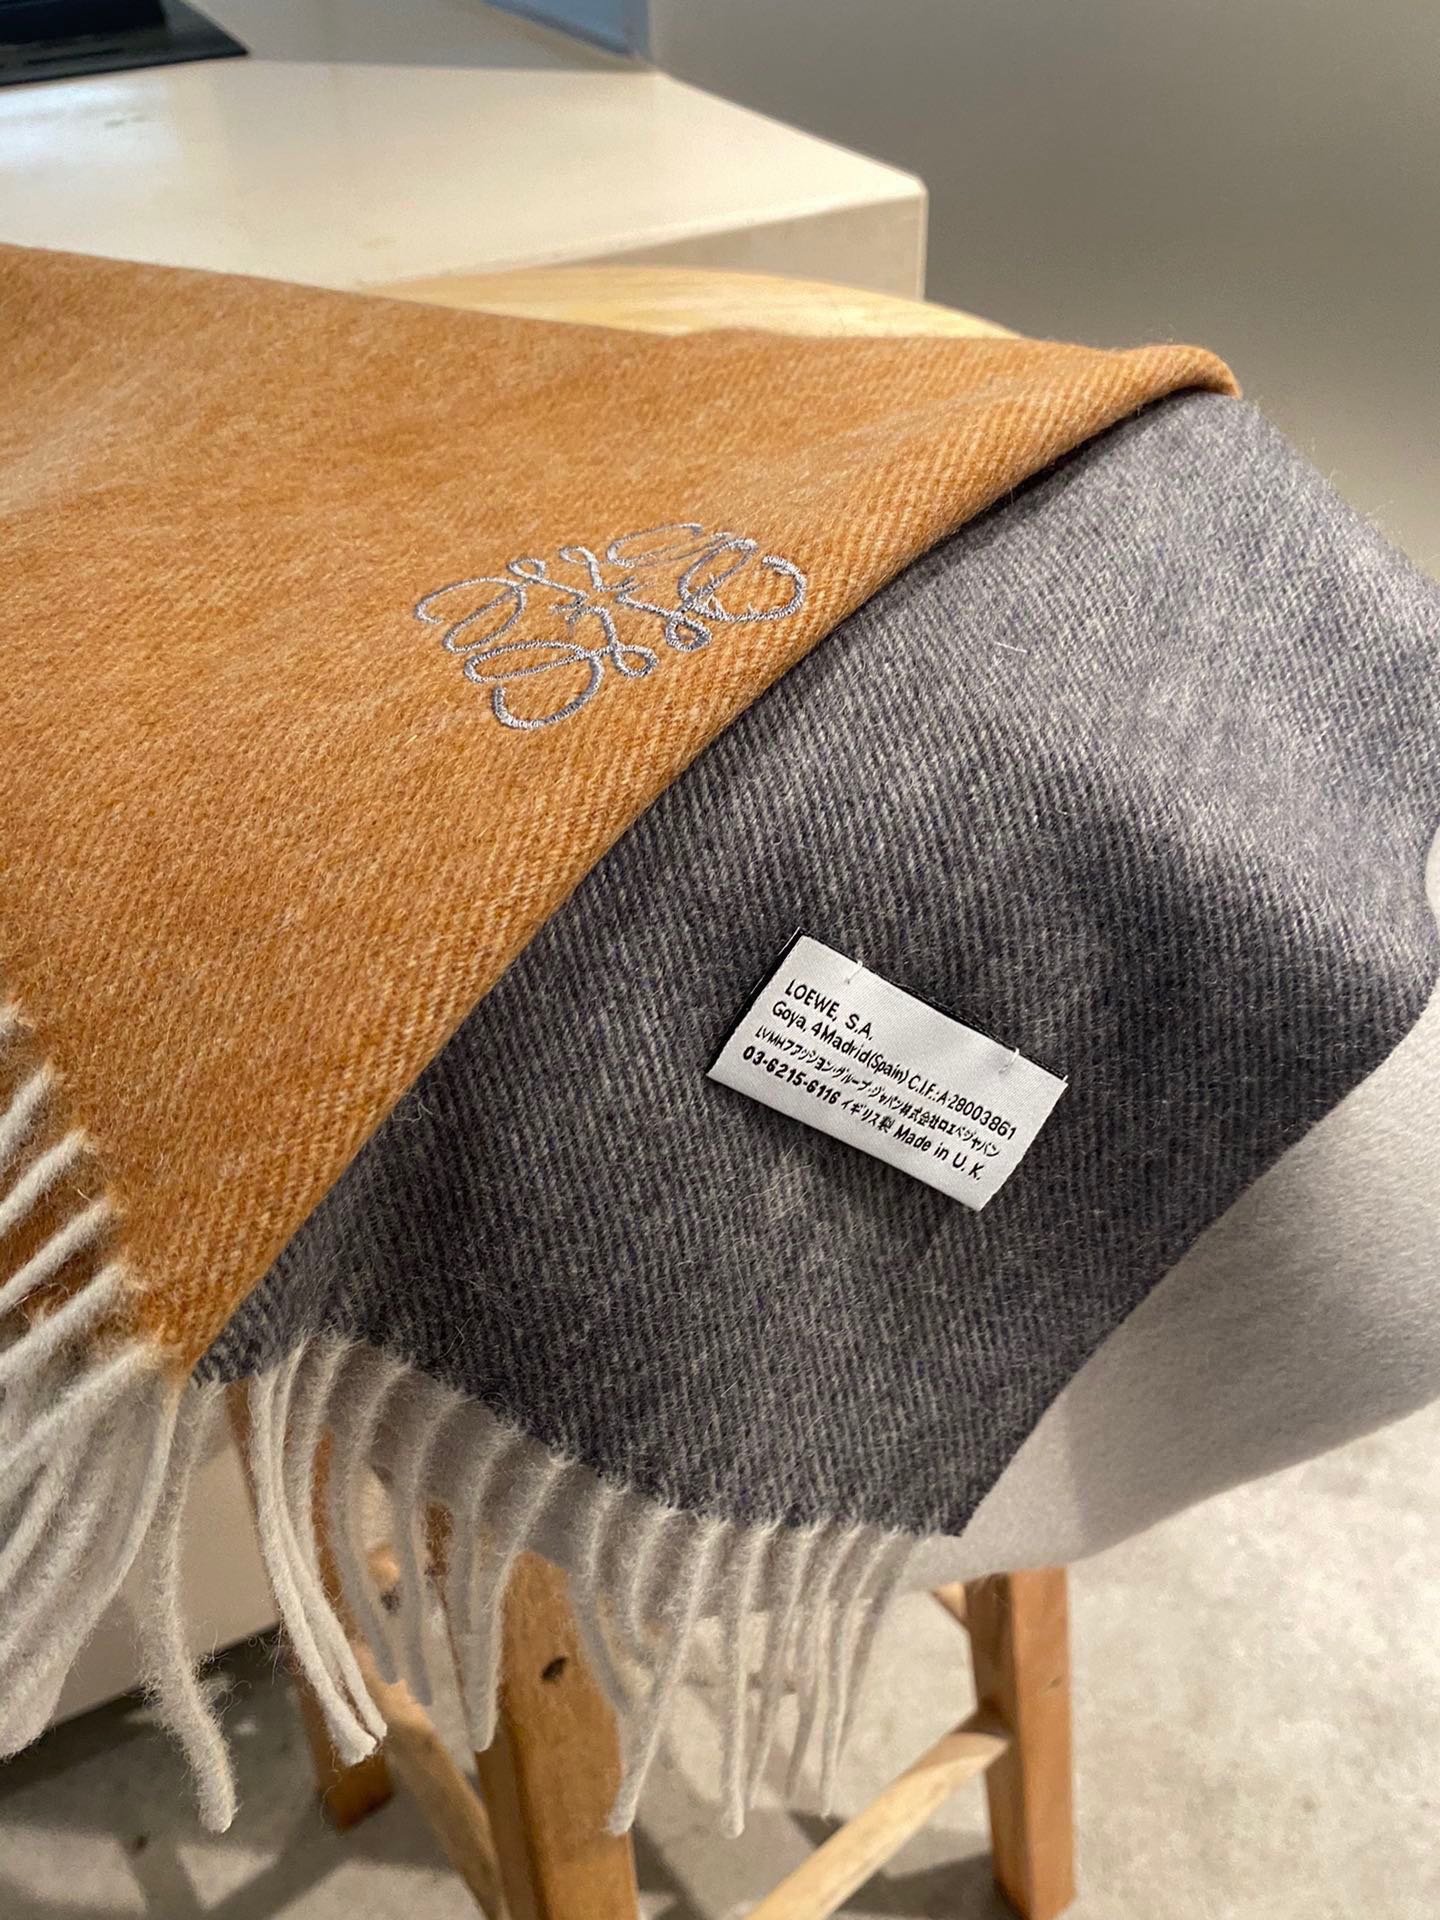 罗意威2021渐变色巴黎时装展商务男士女士通用双面羊绒披肩代工厂臻选上乘的超细羊绒纤维进行纯手工精梳处理